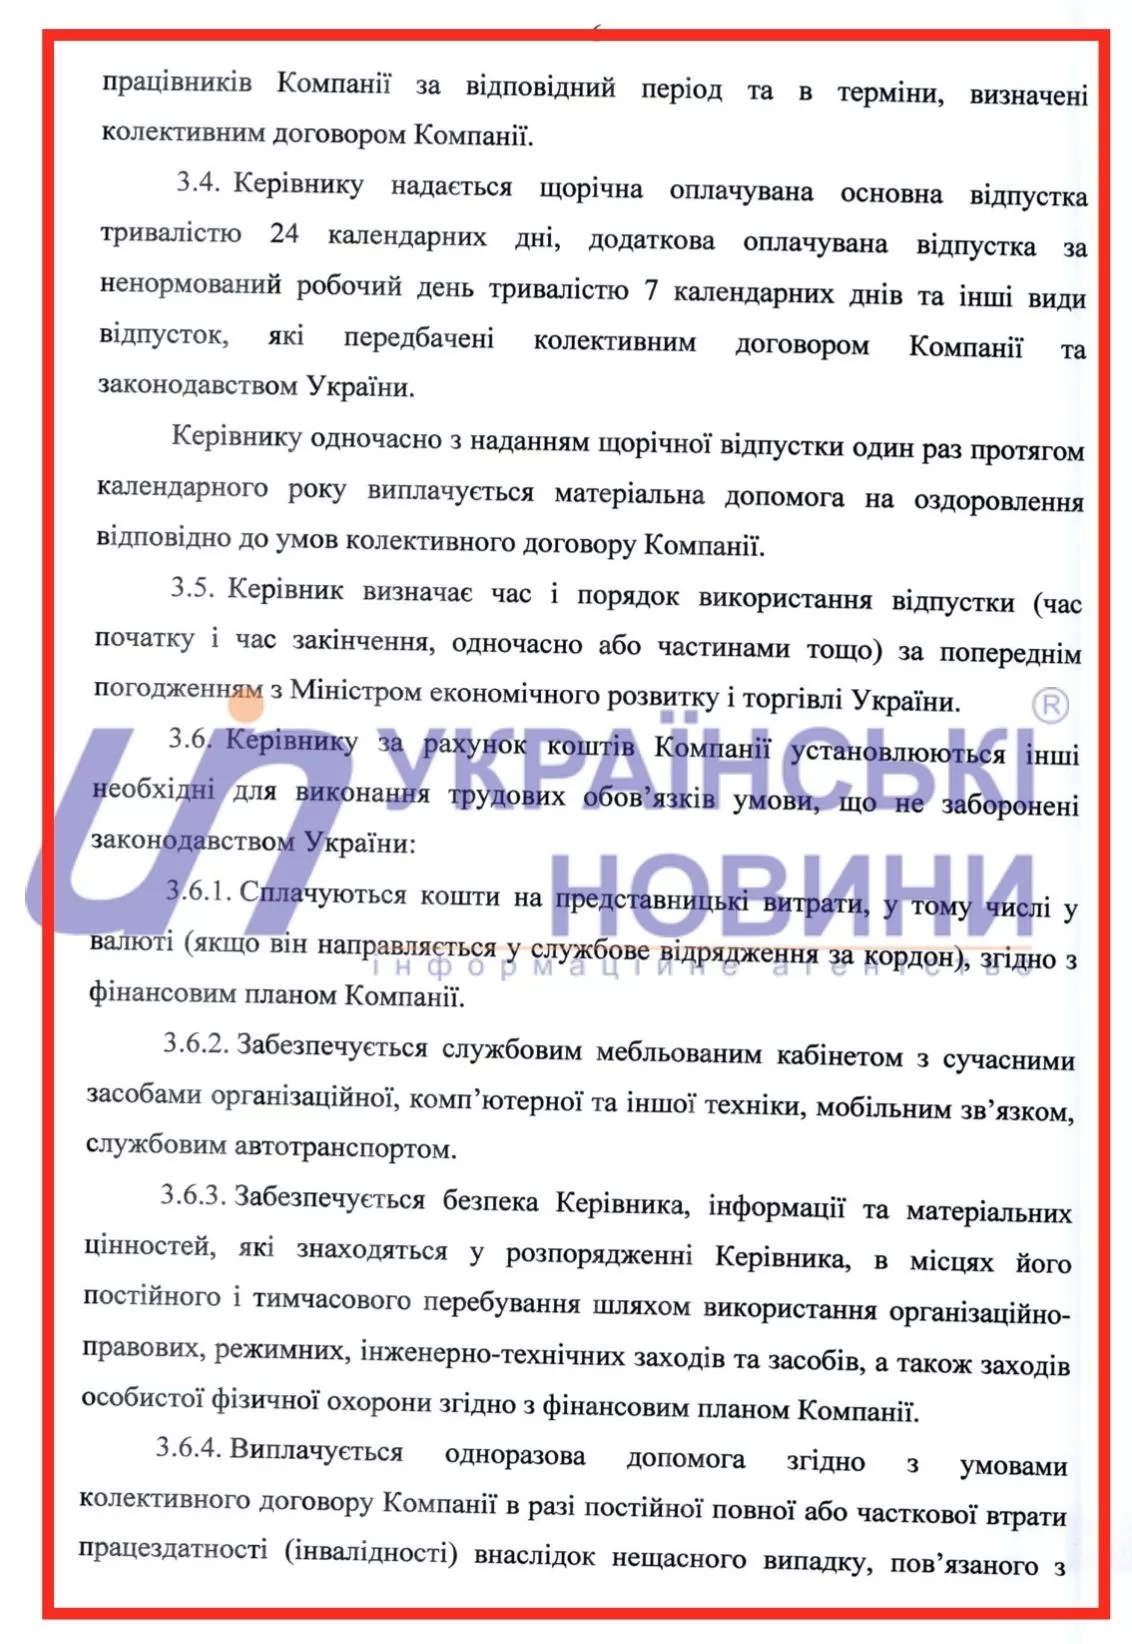 Контракт Коболева с Нафтогазом. Скан: Украинские Новости